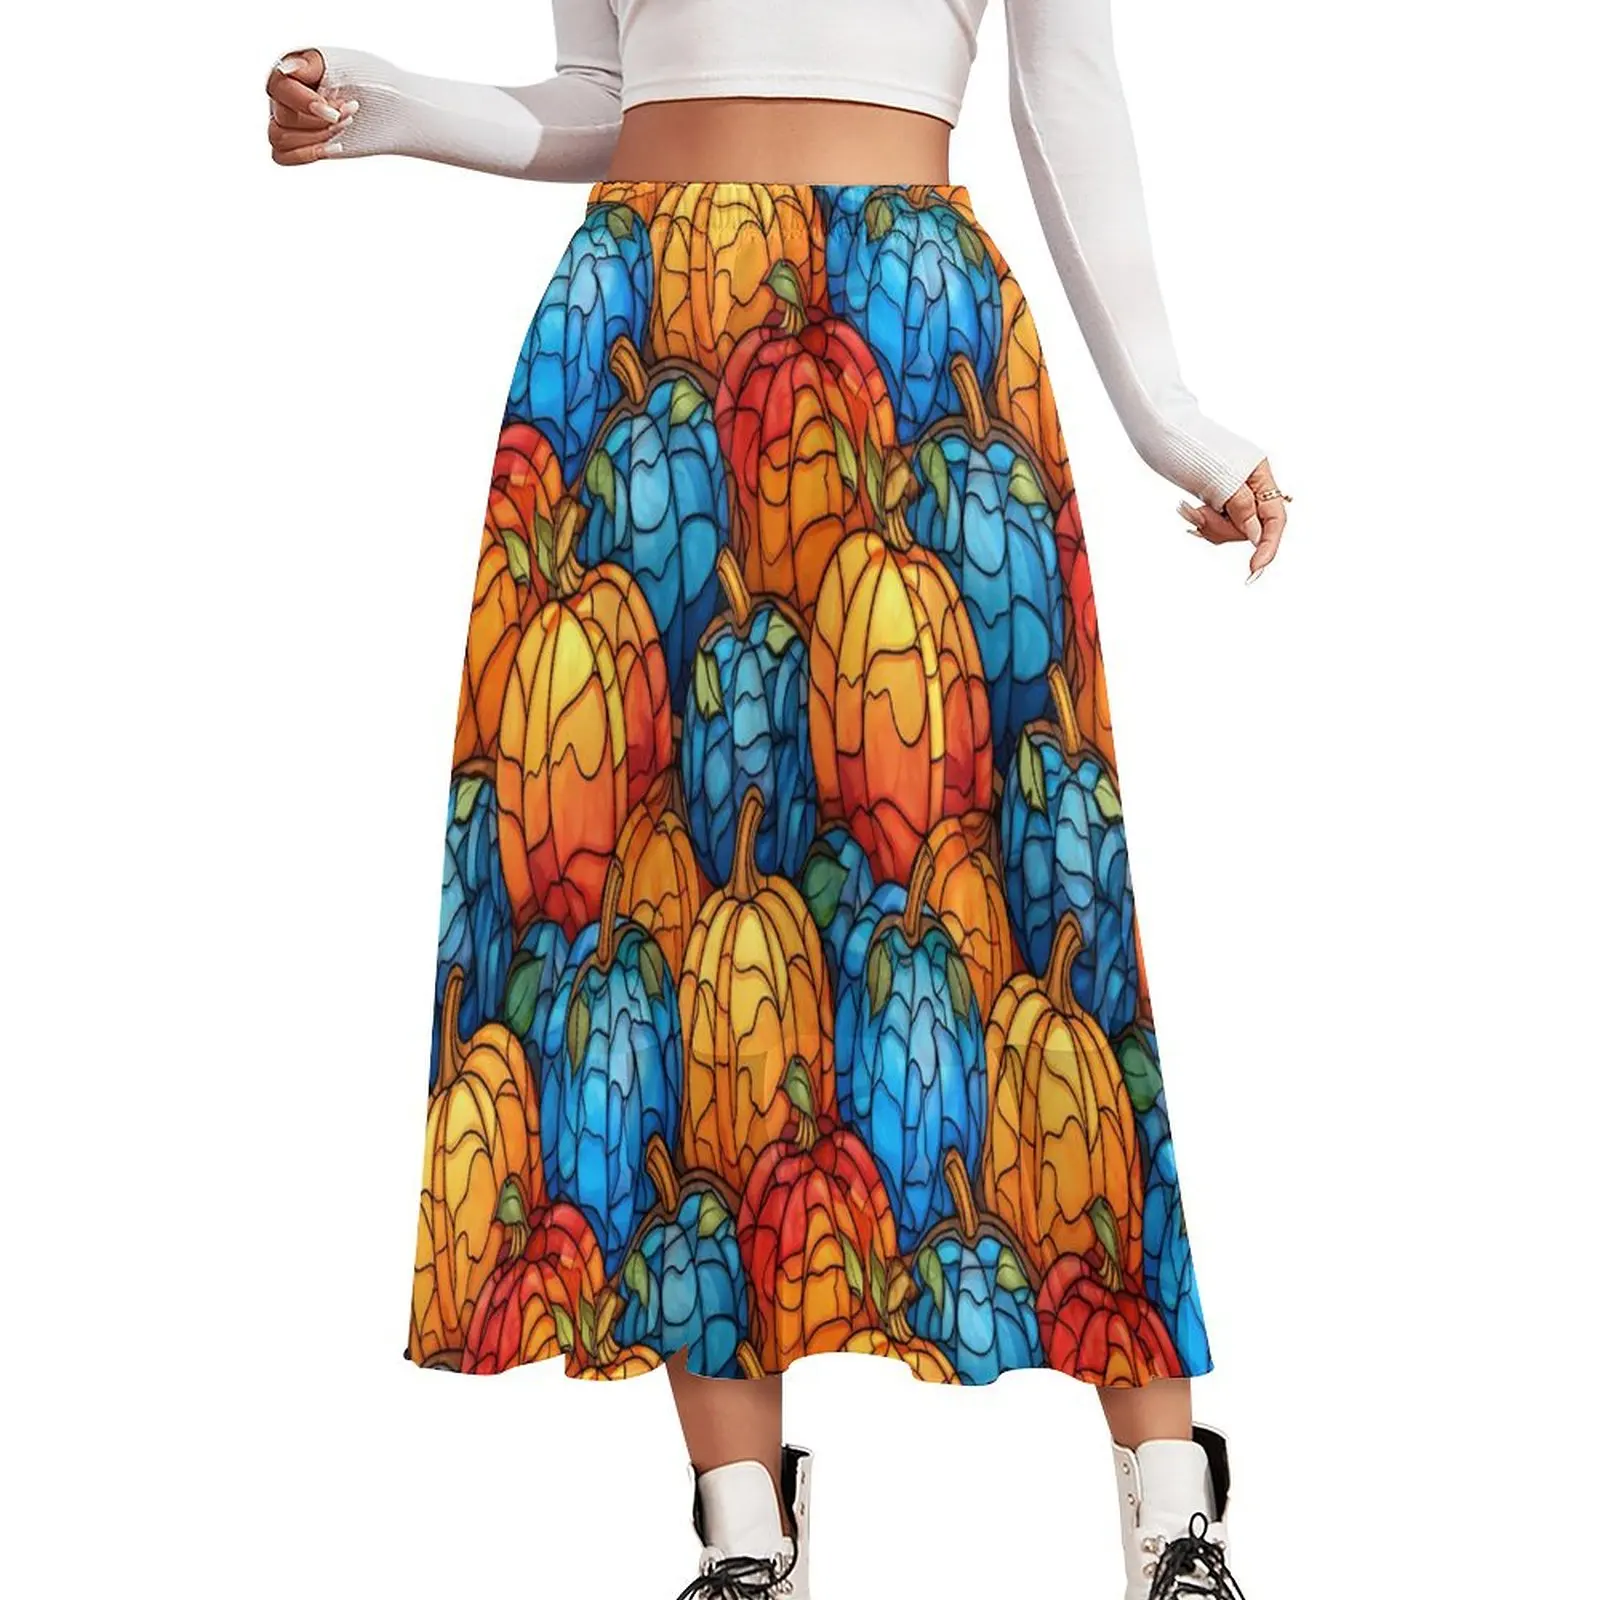 

Юбка с витражными тыквами, синяя и Oranger Y2K, длинные юбки, пляжная юбка в стиле бохо, женская одежда большого размера на заказ